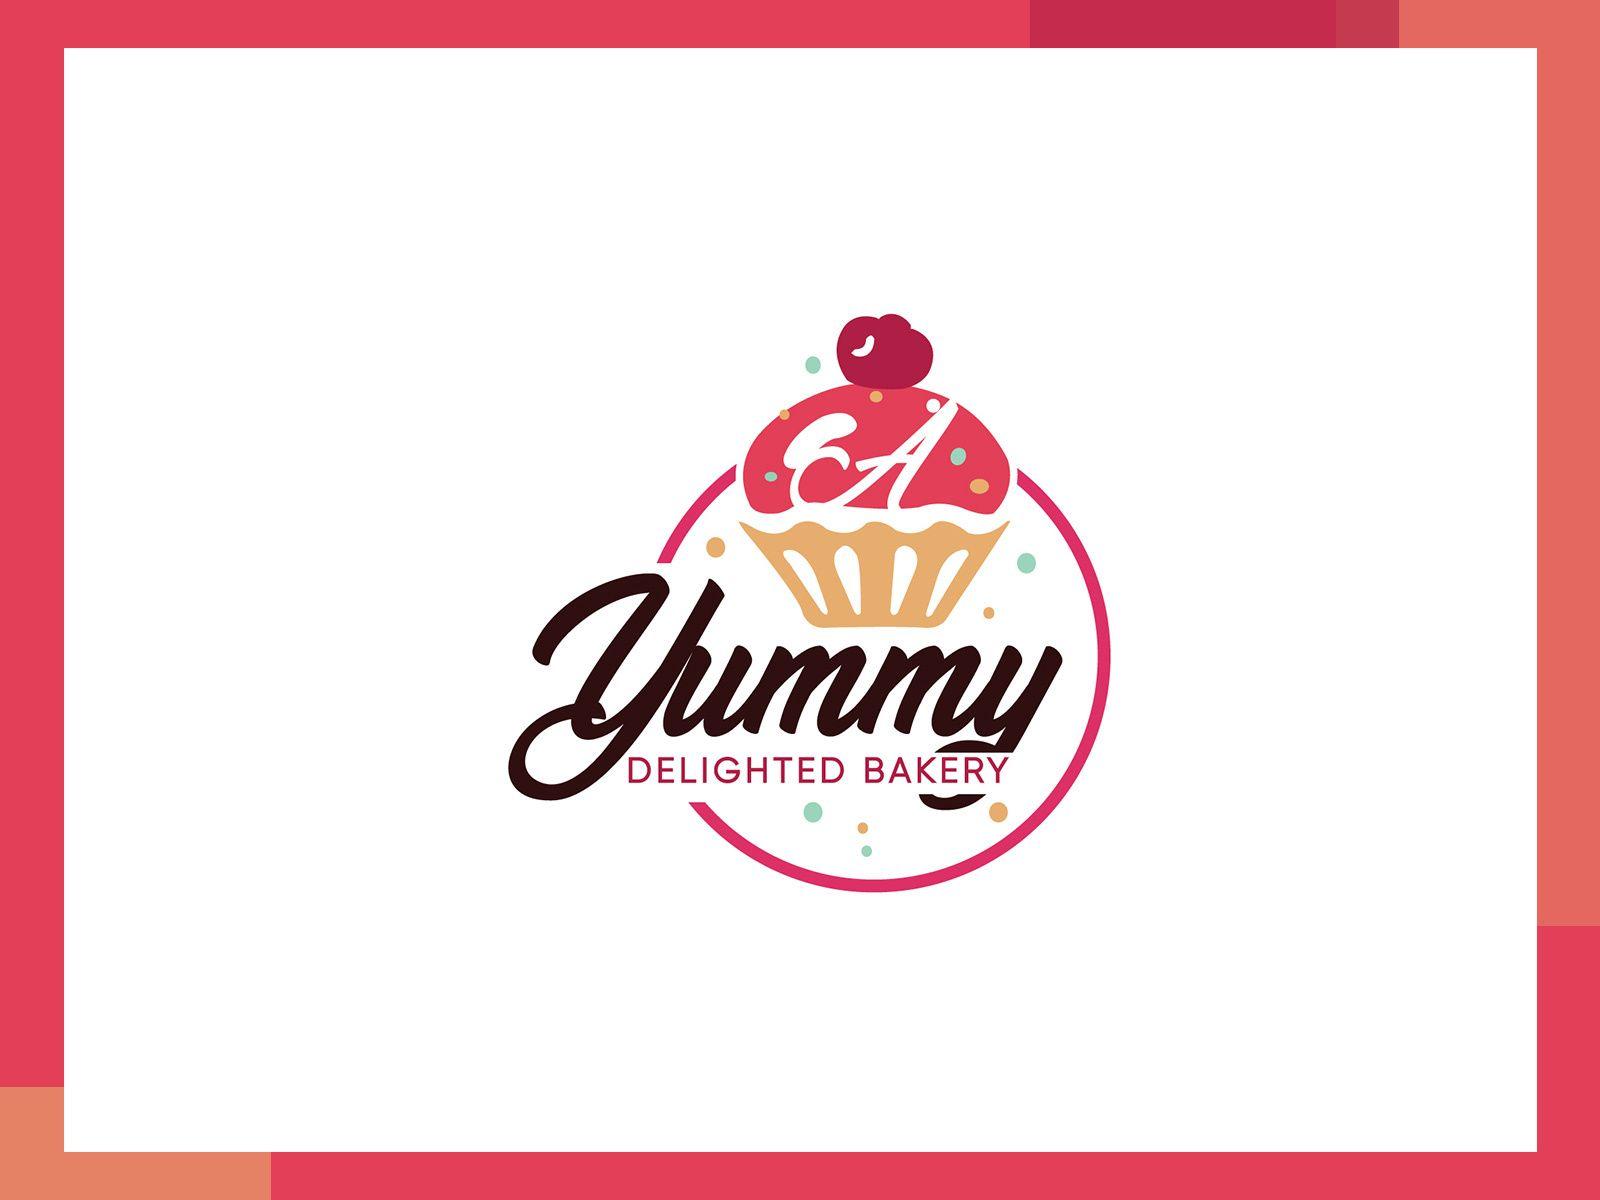 Backery Logo - Bakery Logo by Davinder Aulakh on Dribbble